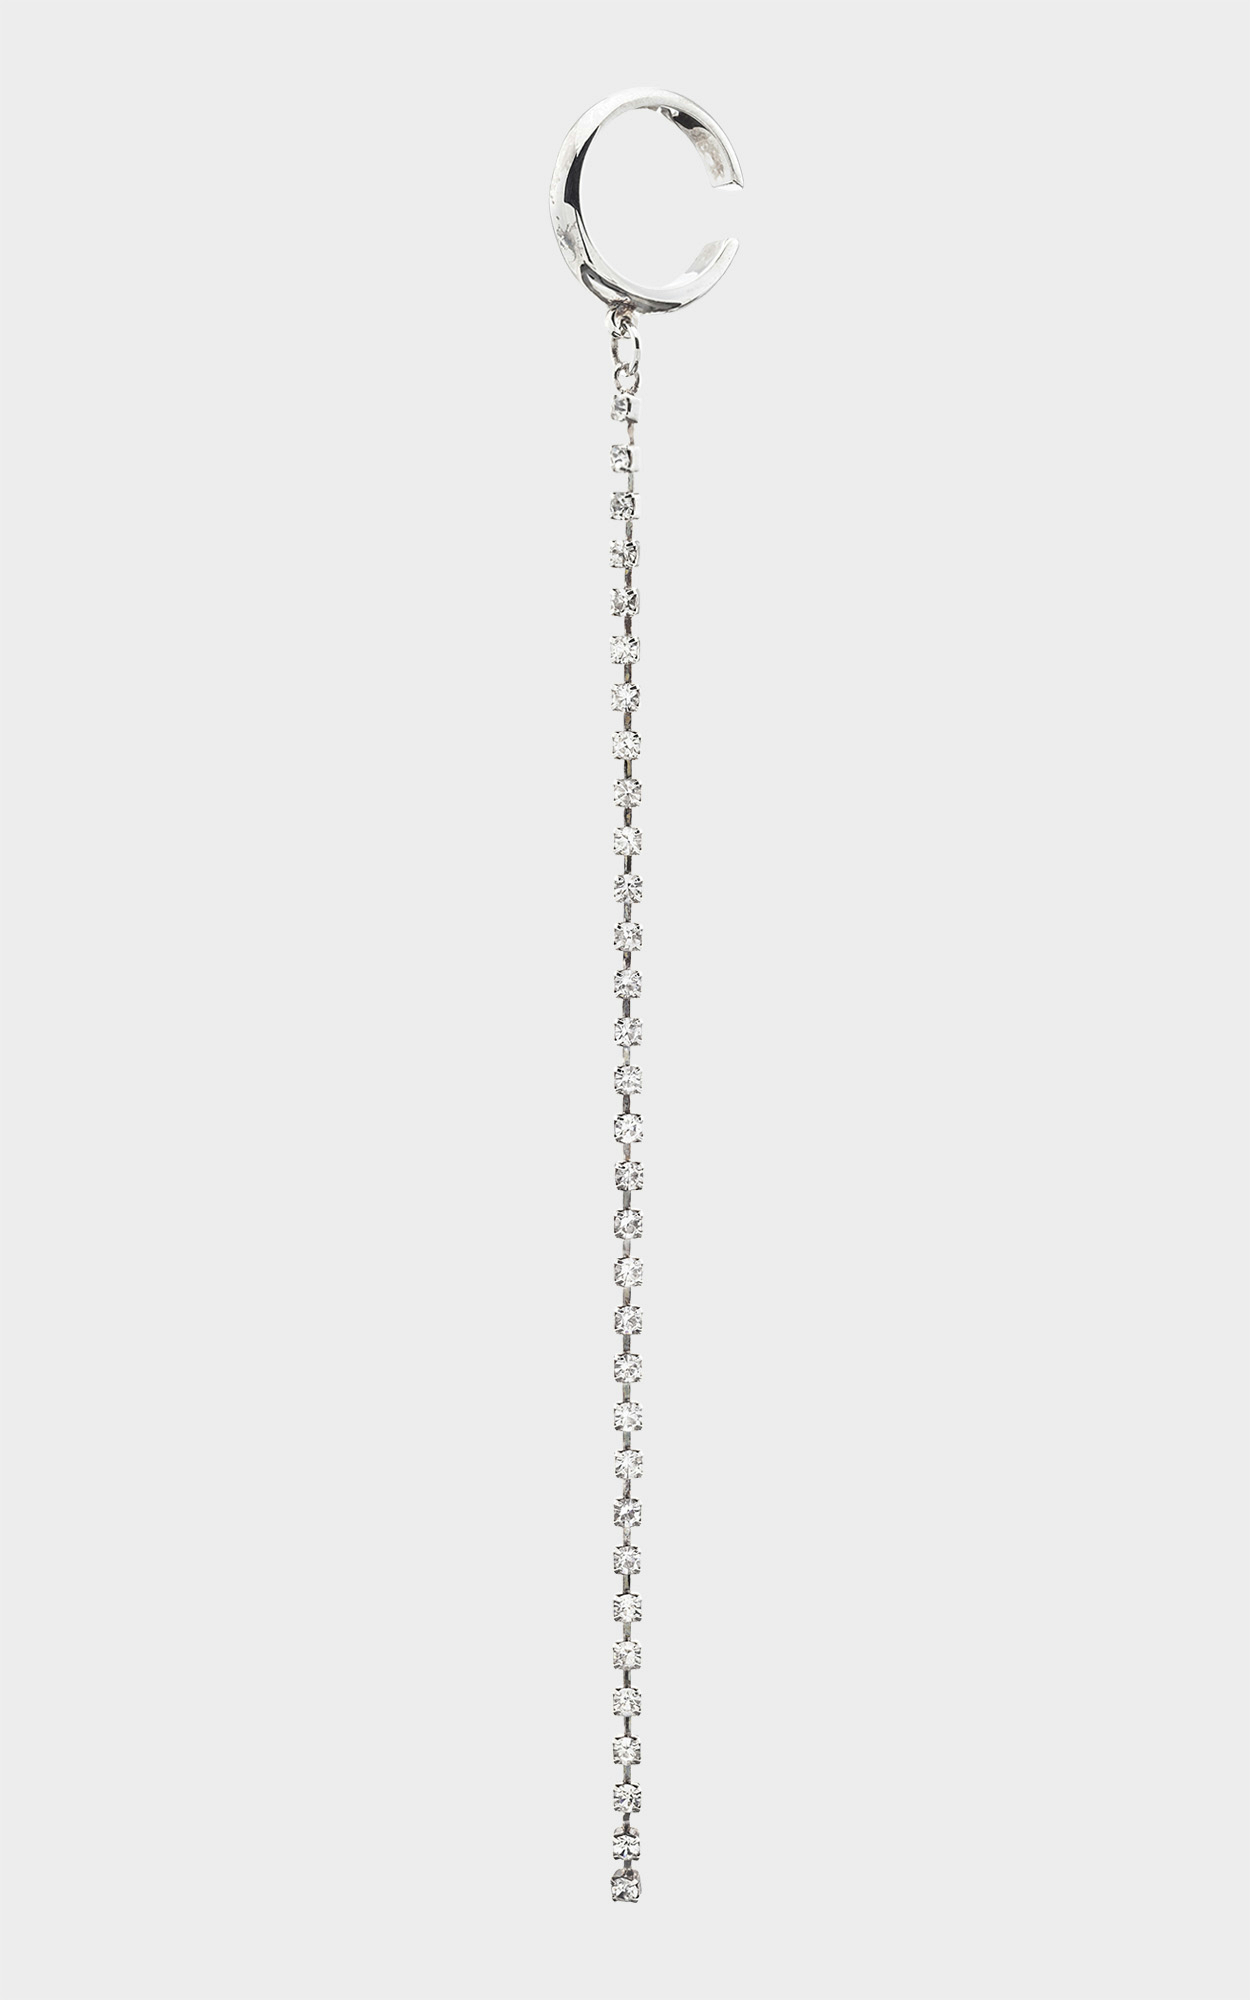 Lala Berlin - Ohrring mit Swarovski Steinen in Silber